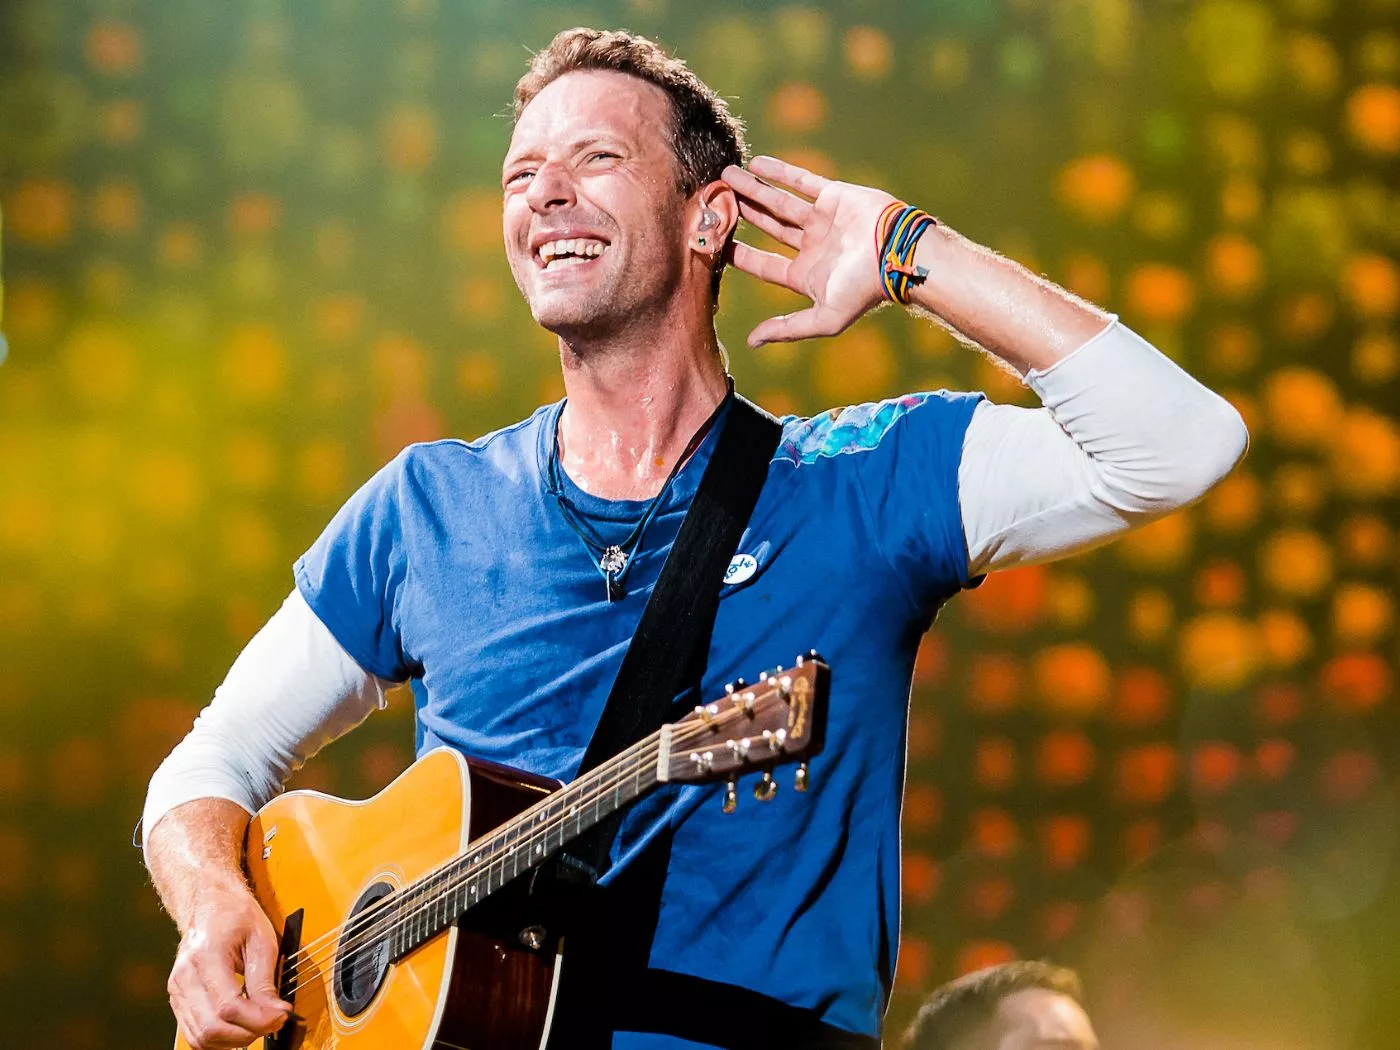 Chris Martin, Vokalis Coldplay yang Konsisten dengan Gaya Hidup Sehatnya | Simak Fakta Unik Lainnya di Sini!